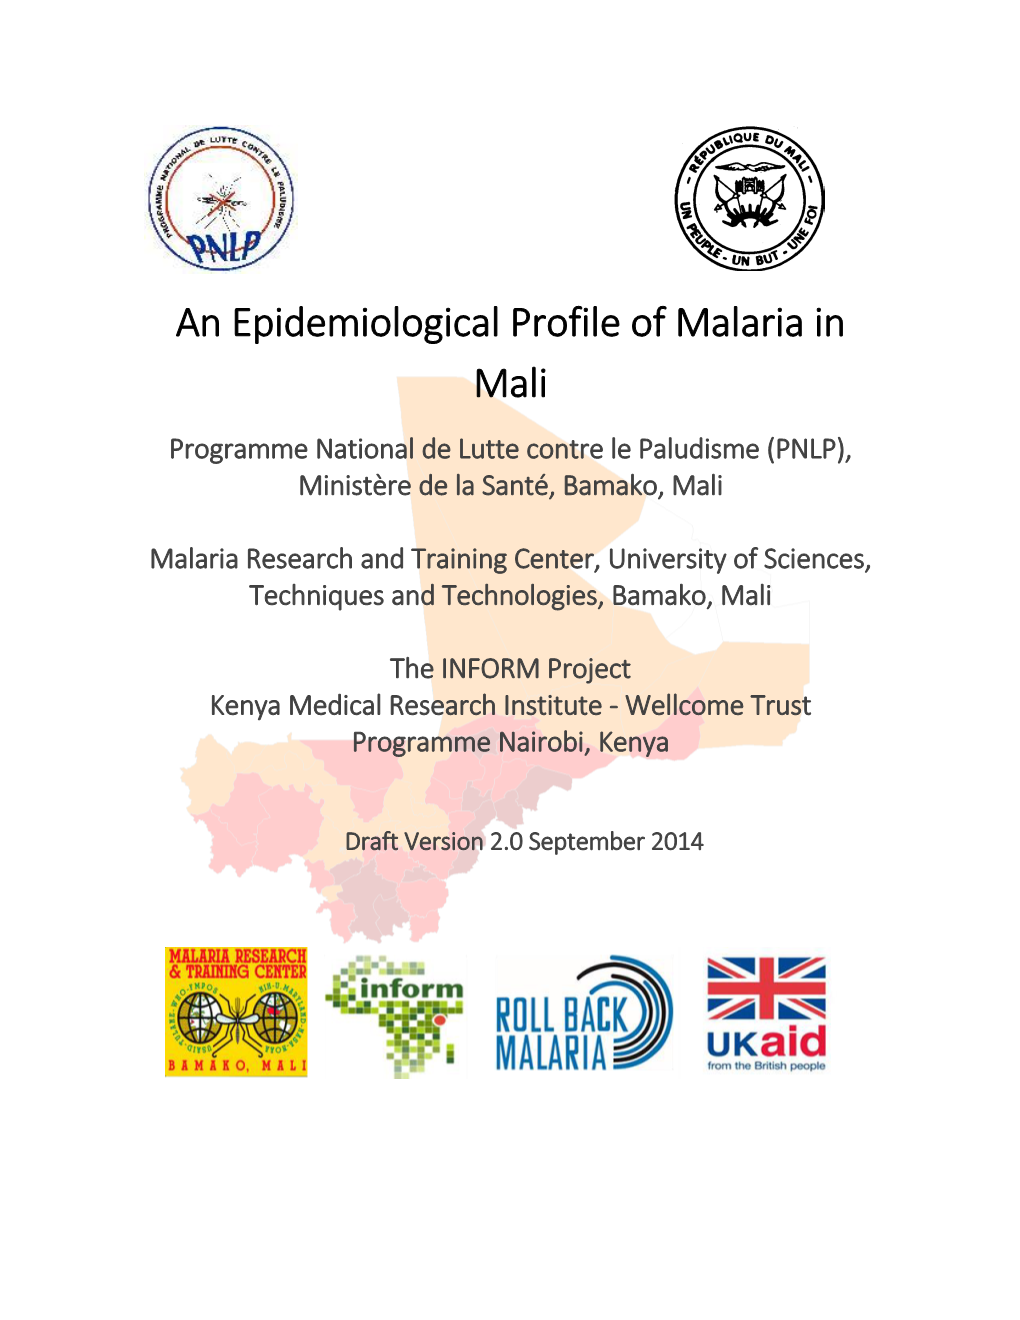 An Epidemiological Profile of Malaria in Mali Programme National De Lutte Contre Le Paludisme (PNLP), Ministère De La Santé, Bamako, Mali